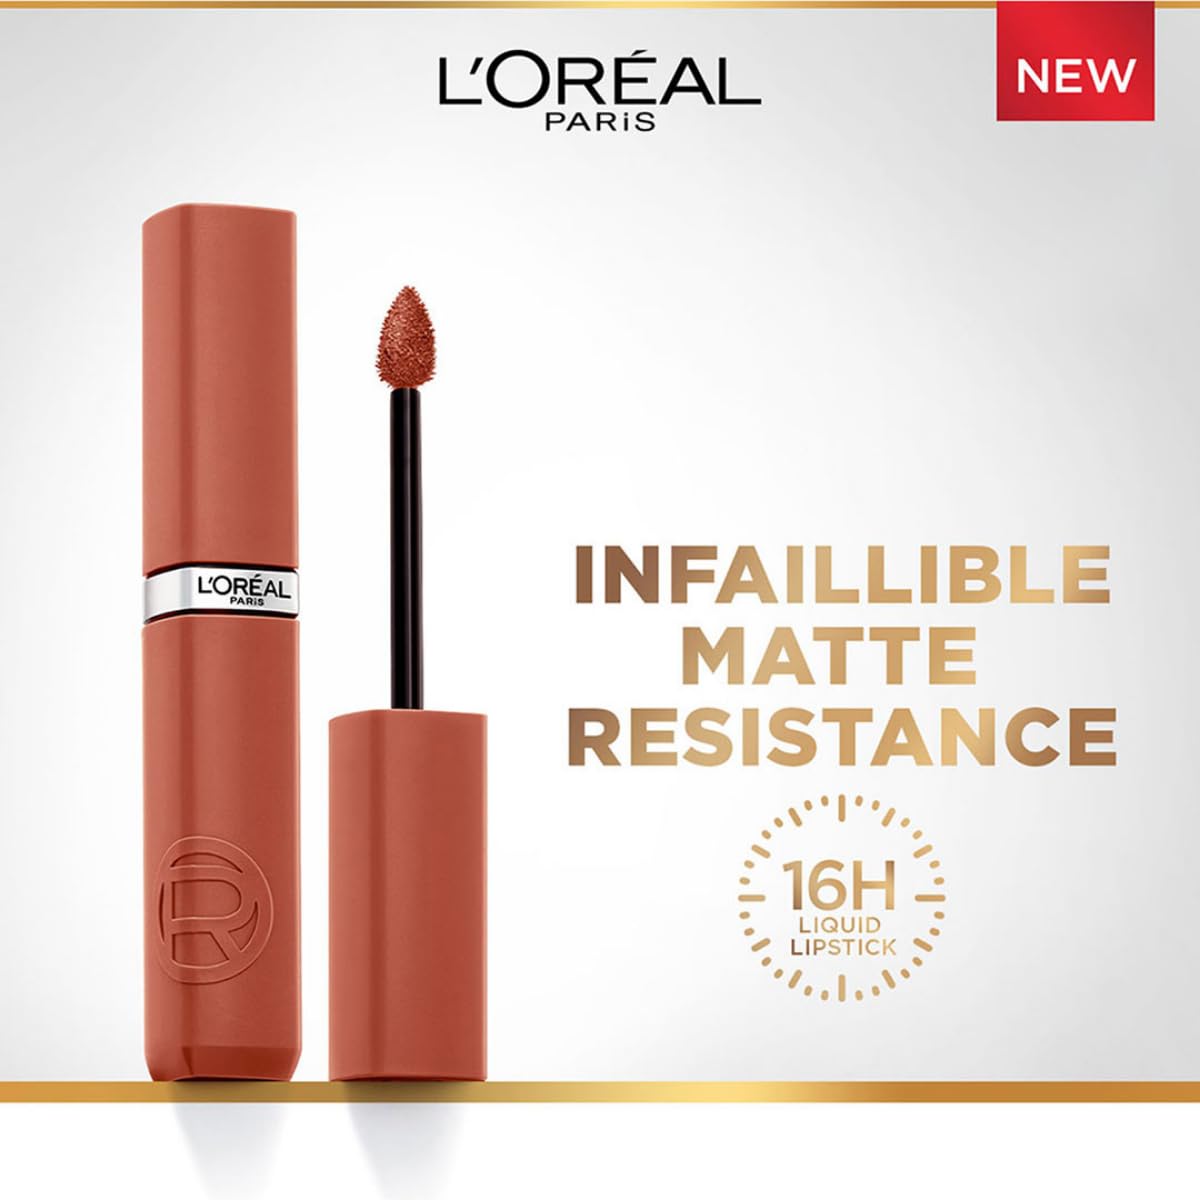 L'Oreal Paris Infallible Matte Resistance Liquid Lipstick, Snooze Your Alarm 115, 5 ml